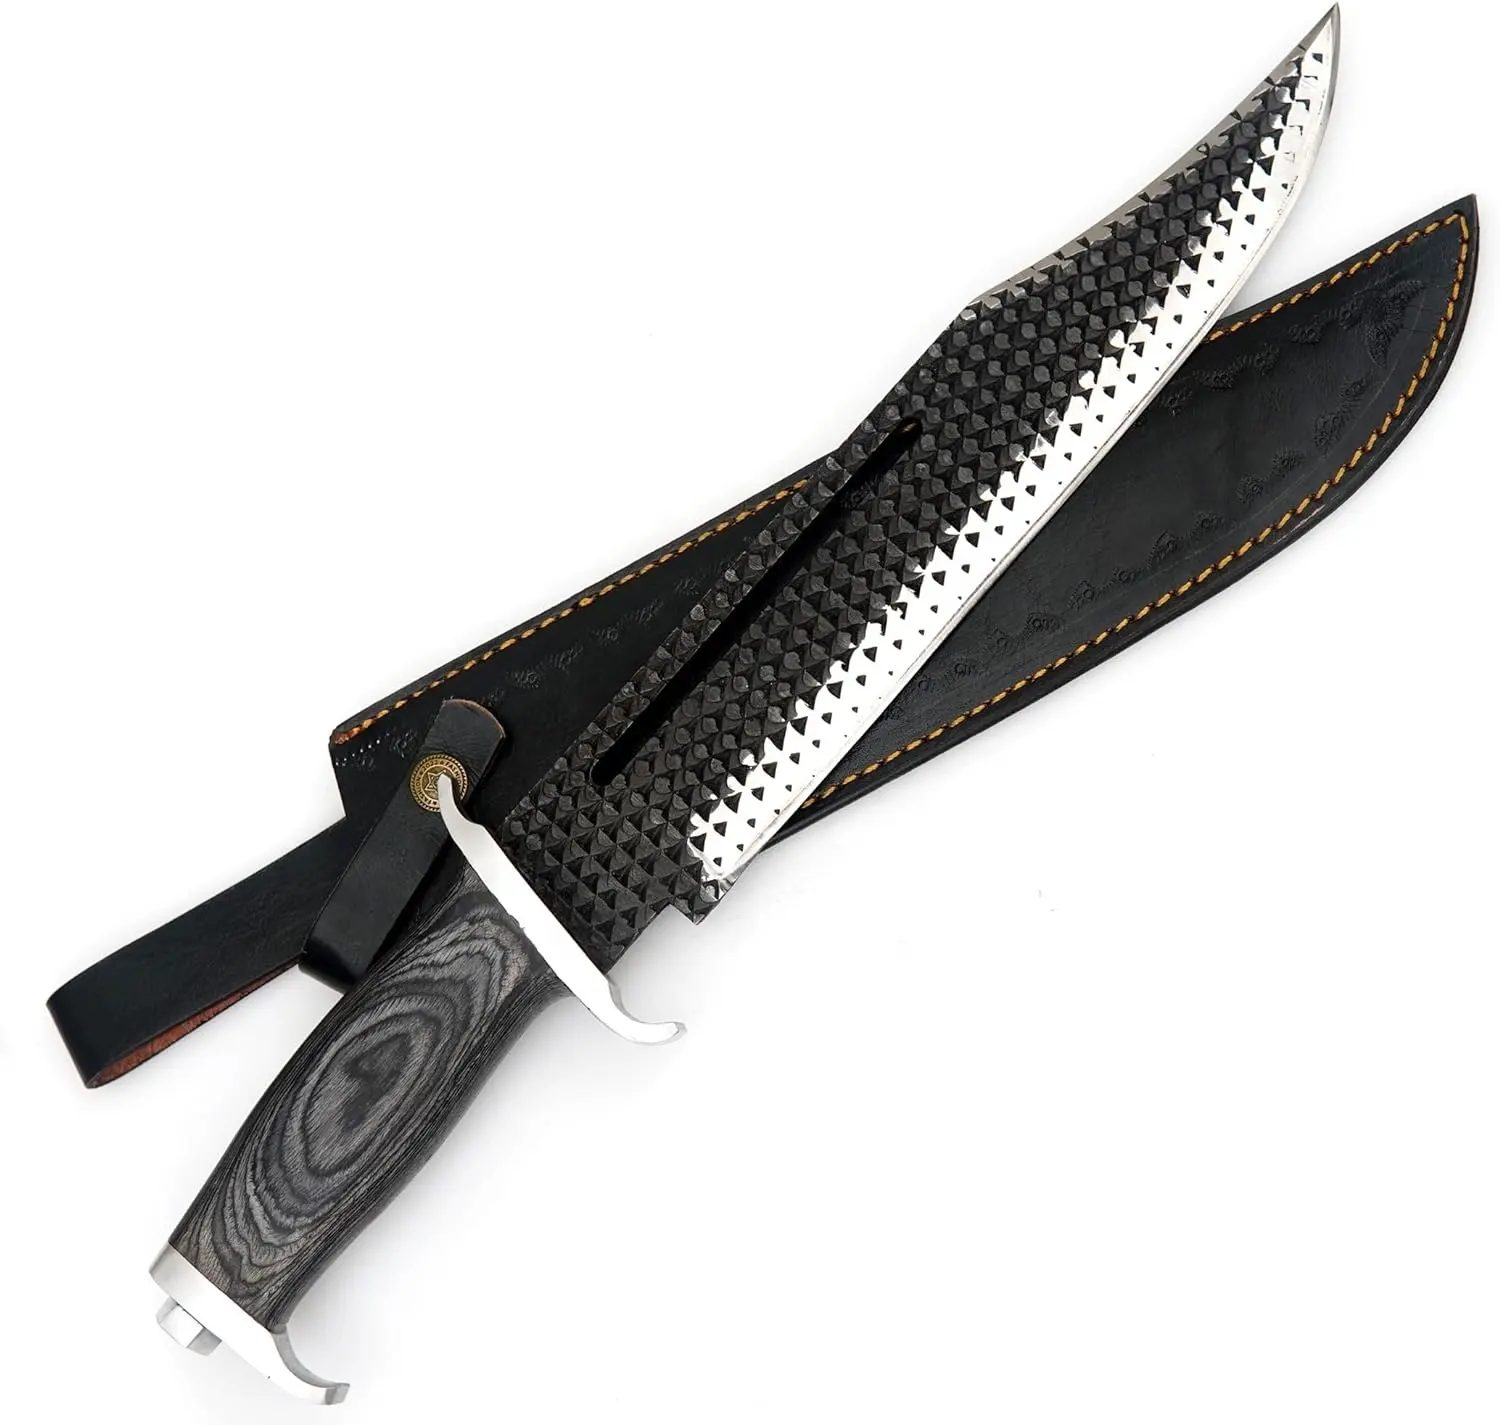 Handmade aço carbono Rambo 3 bowie faca com cabo de madeira pukka e couro bainha Viking faca ao ar livre faca de prata guarda